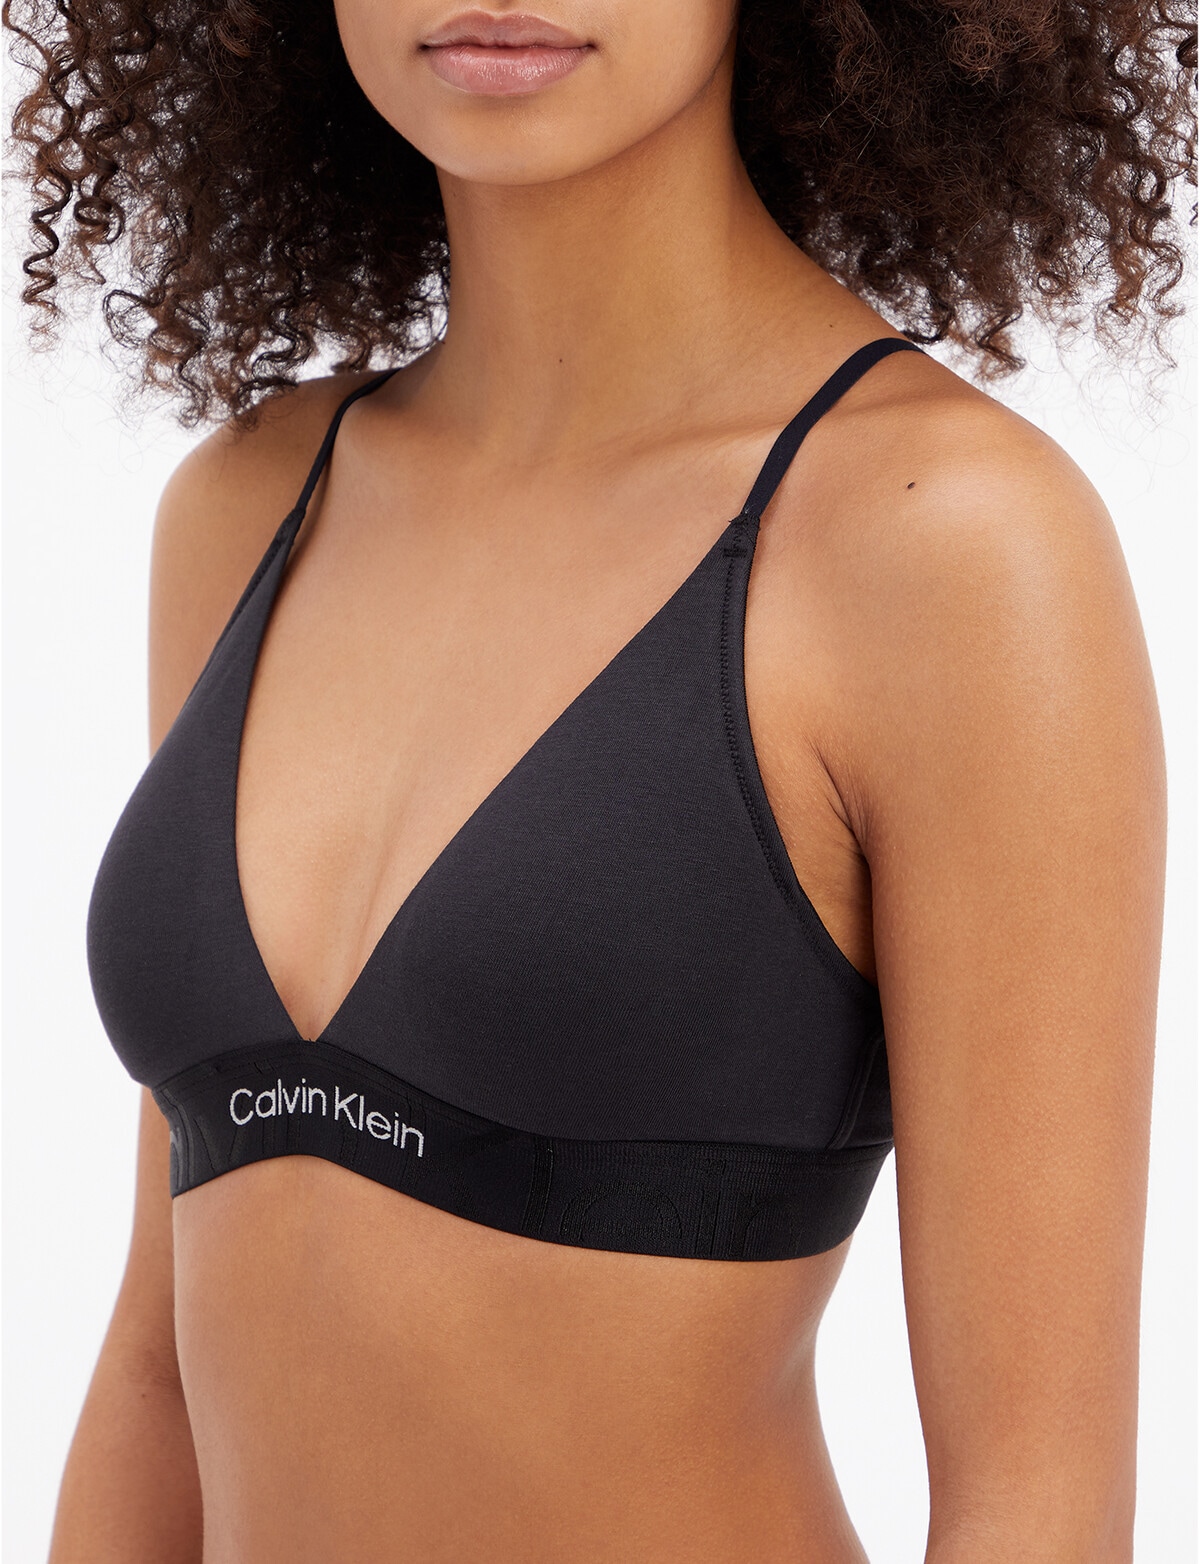 Calvin Klein Underwear LINED - Triangle bra - black 